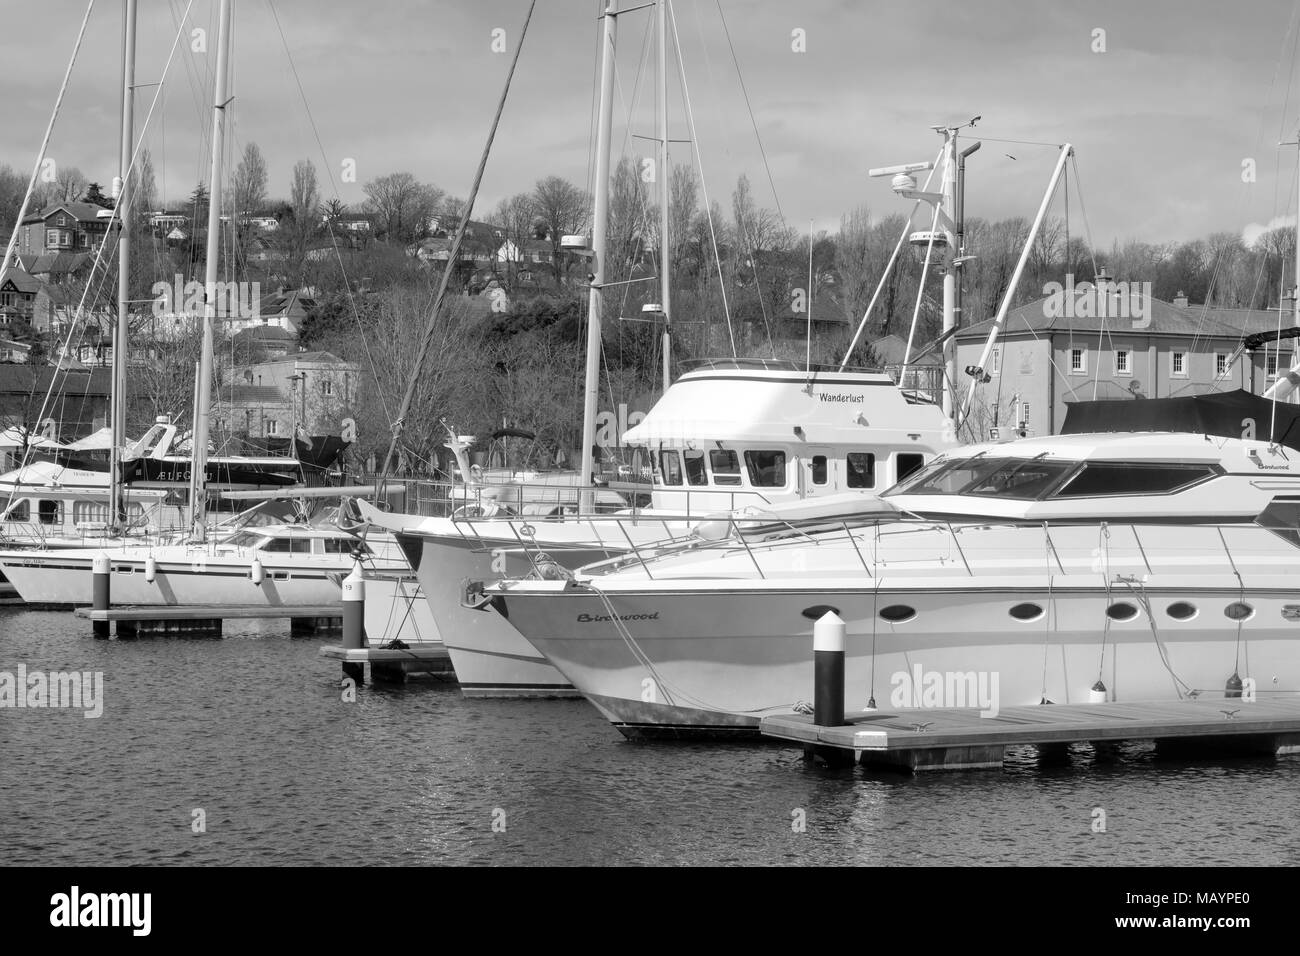 Avril 2018 - Bateaux et yachts sur Portishead Marina près de Bristol. Banque D'Images